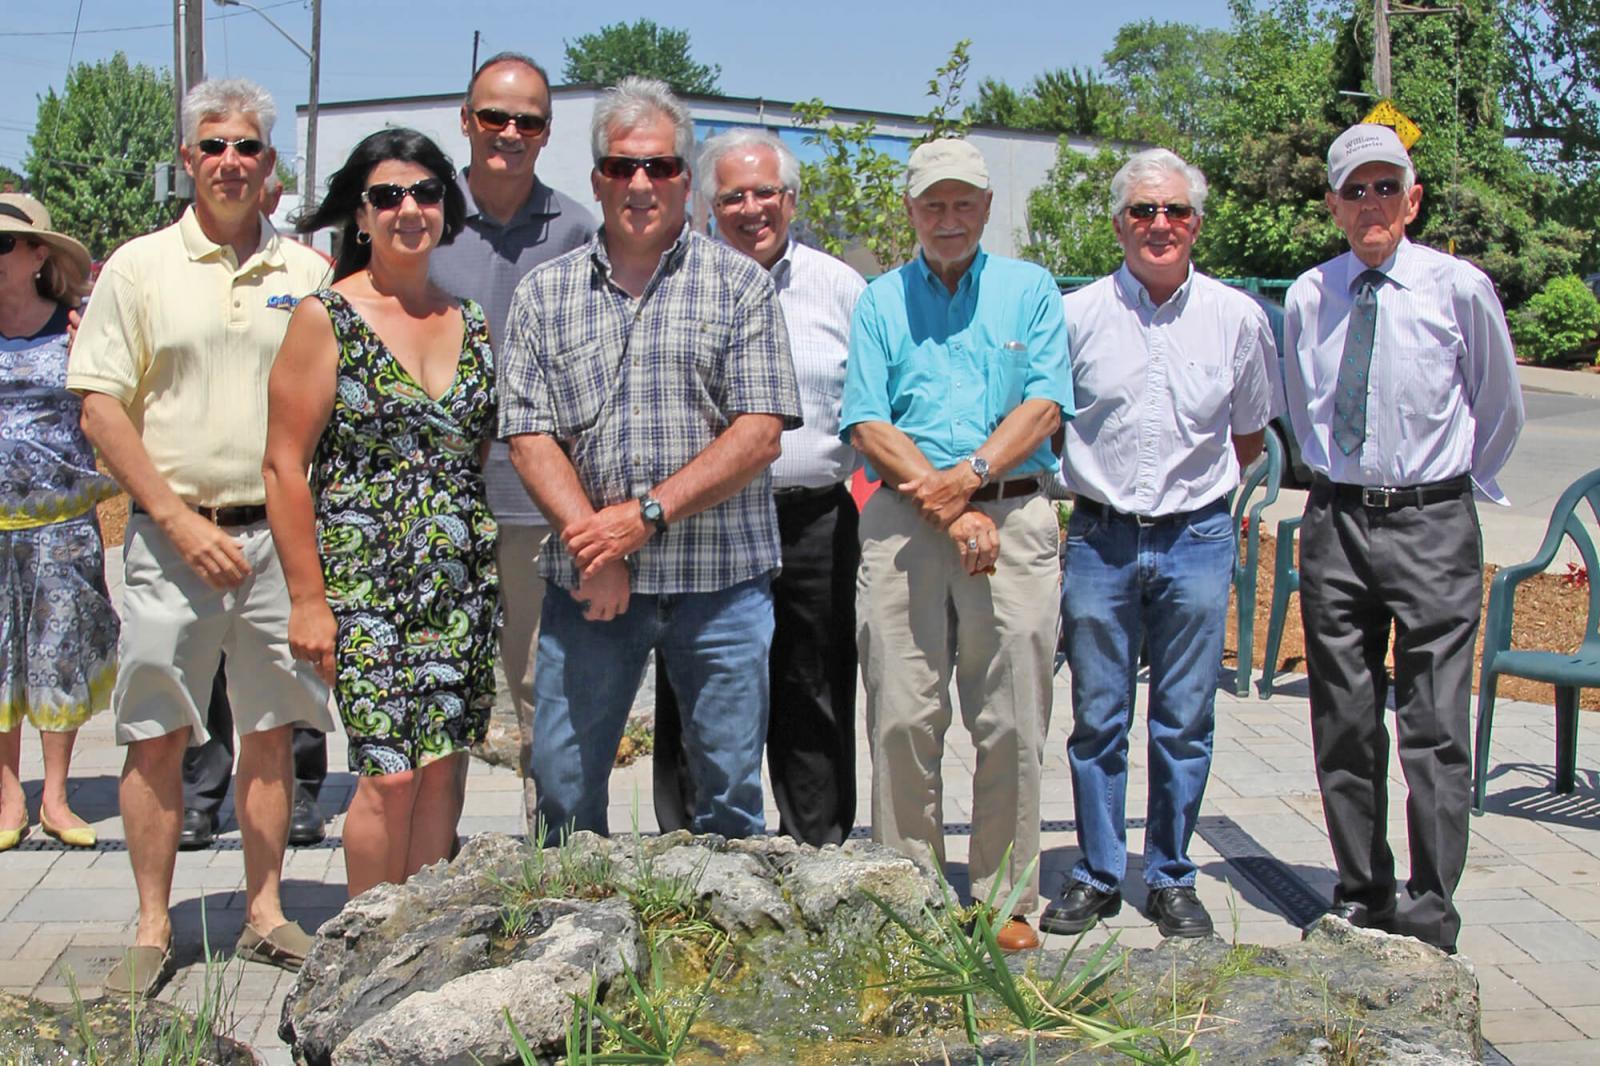 Perry Molema garden opens to the public